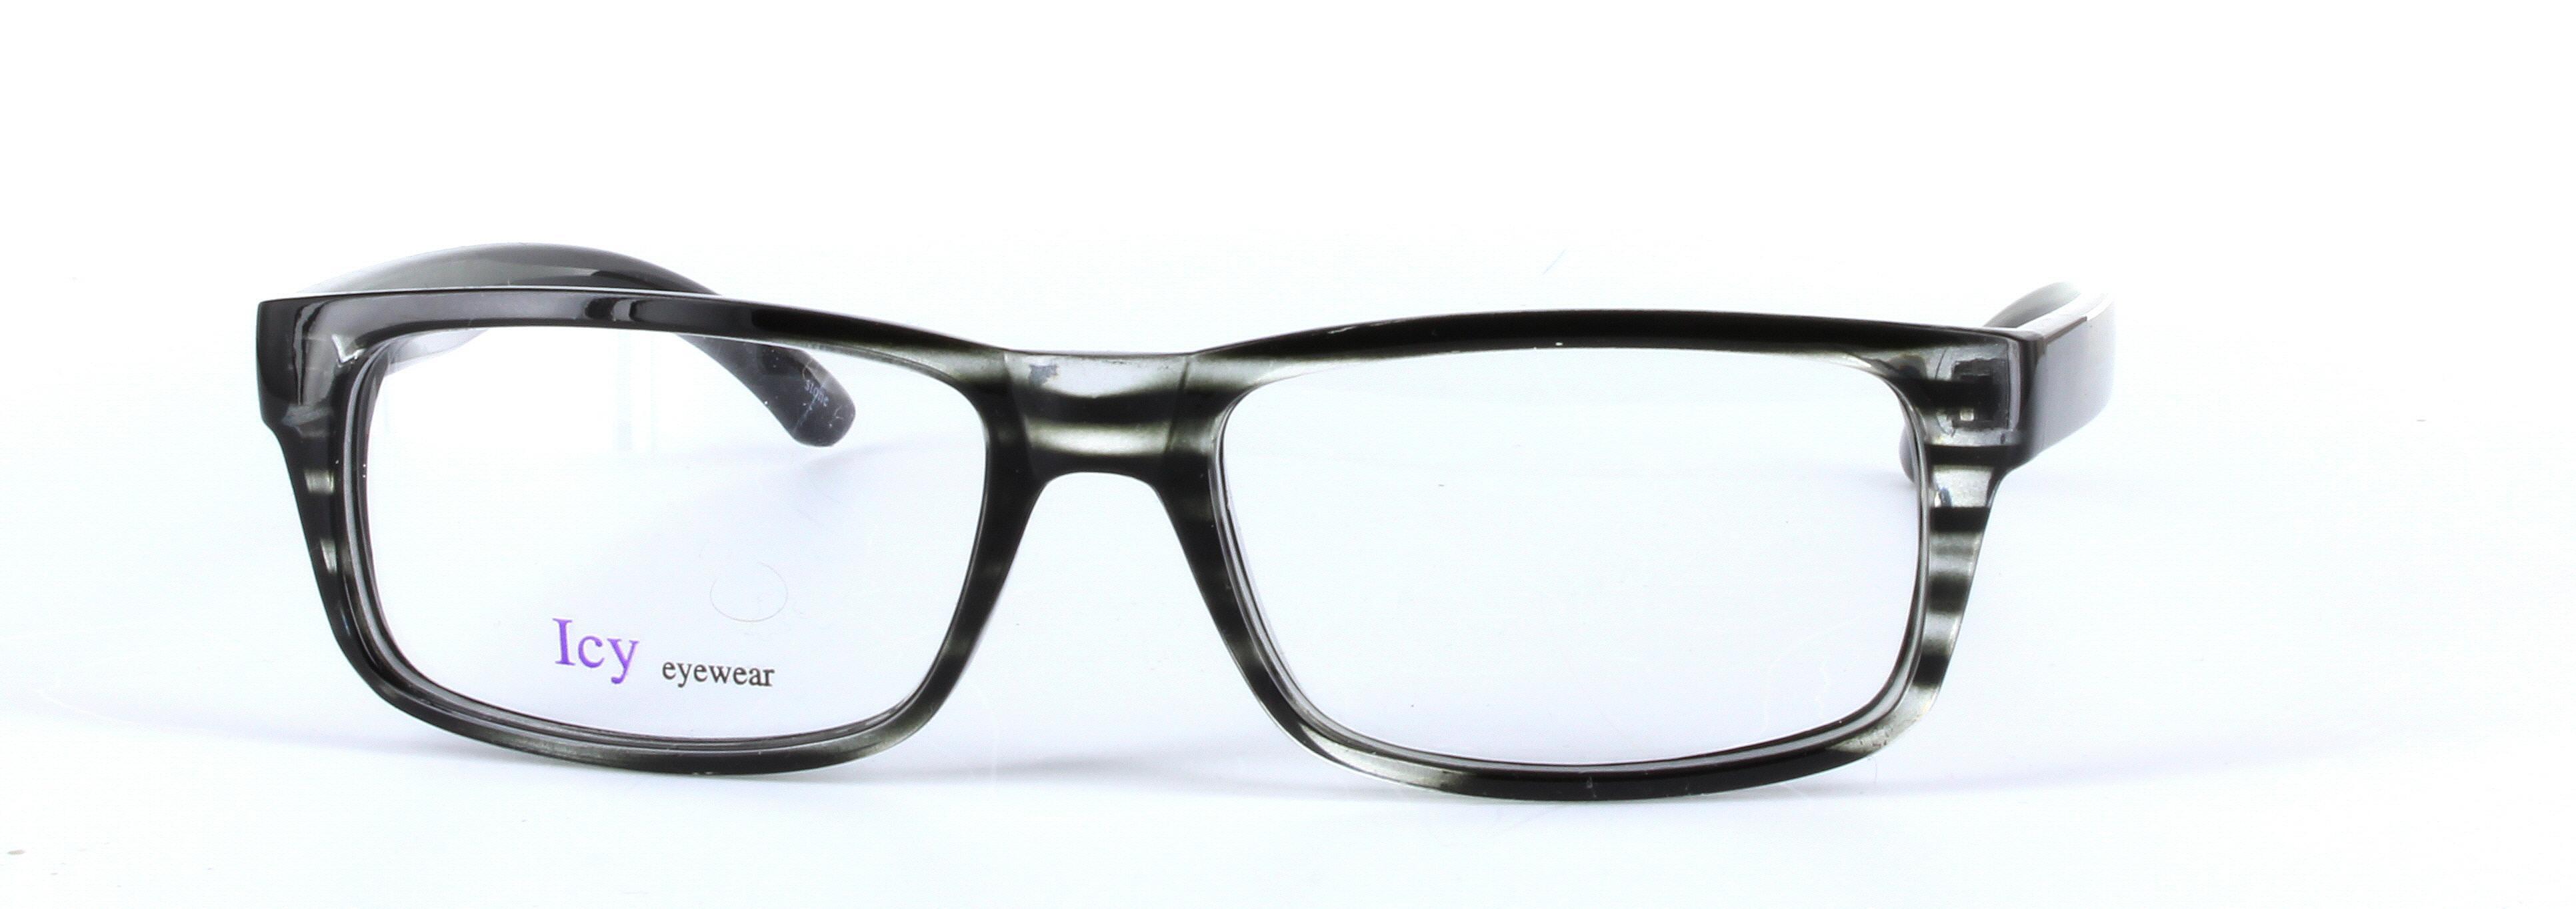 ICY 160 Grey Full Rim Rectangular Square Plastic Glasses - Image View 5